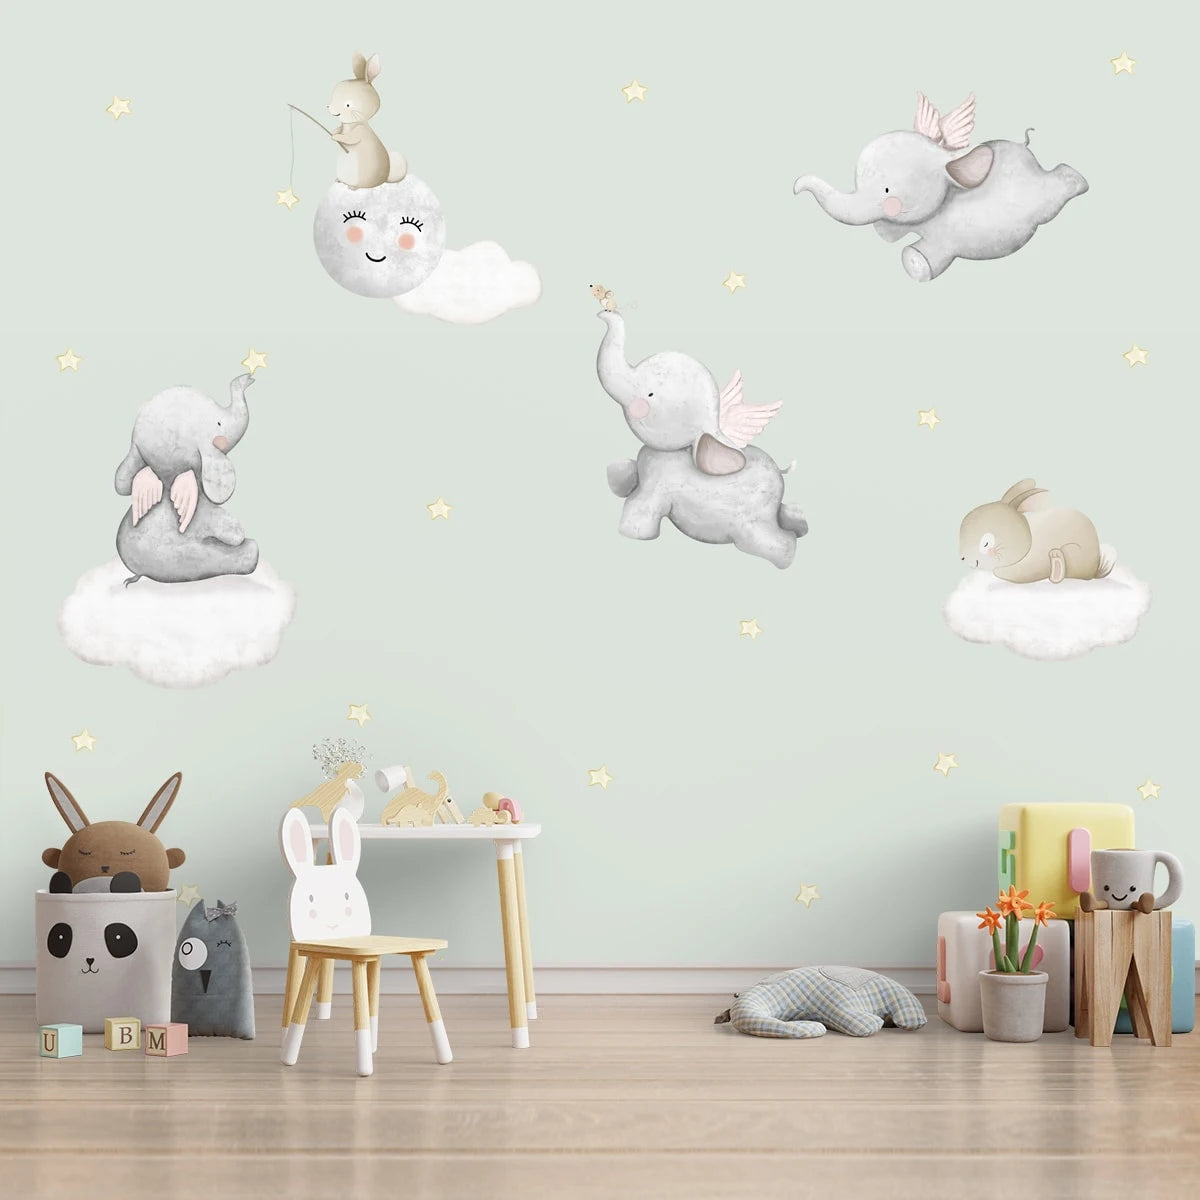 How To Choose Nursery Room Wallpaper Designs